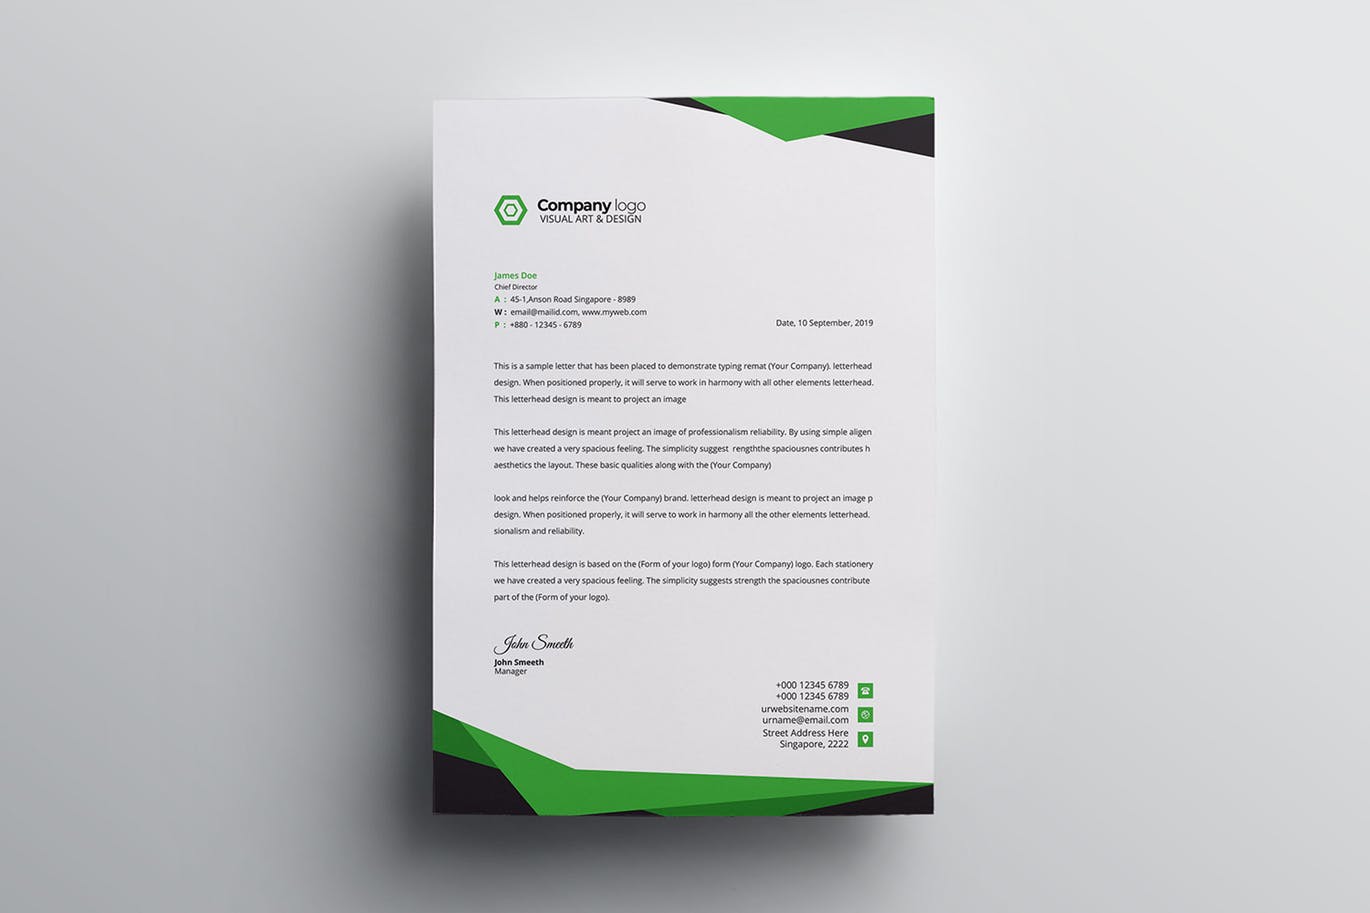 信息科技企业信封设计模板v4 Letterhead插图(1)